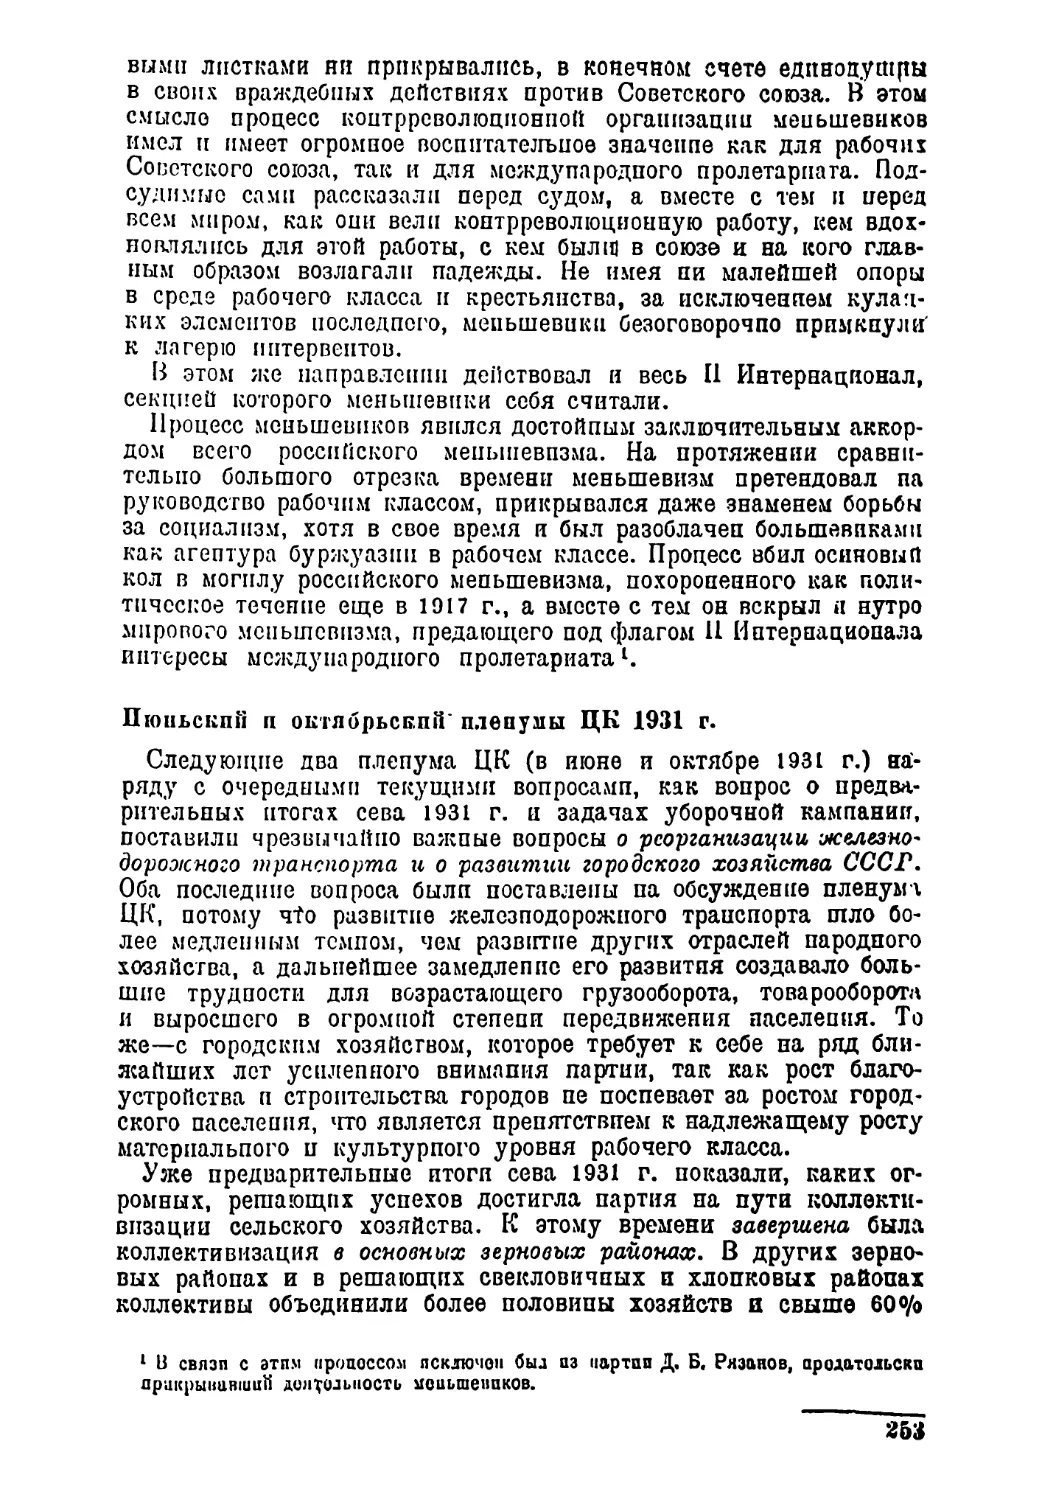 Июньской и октябрьский пленумы ЦК 1931 г.